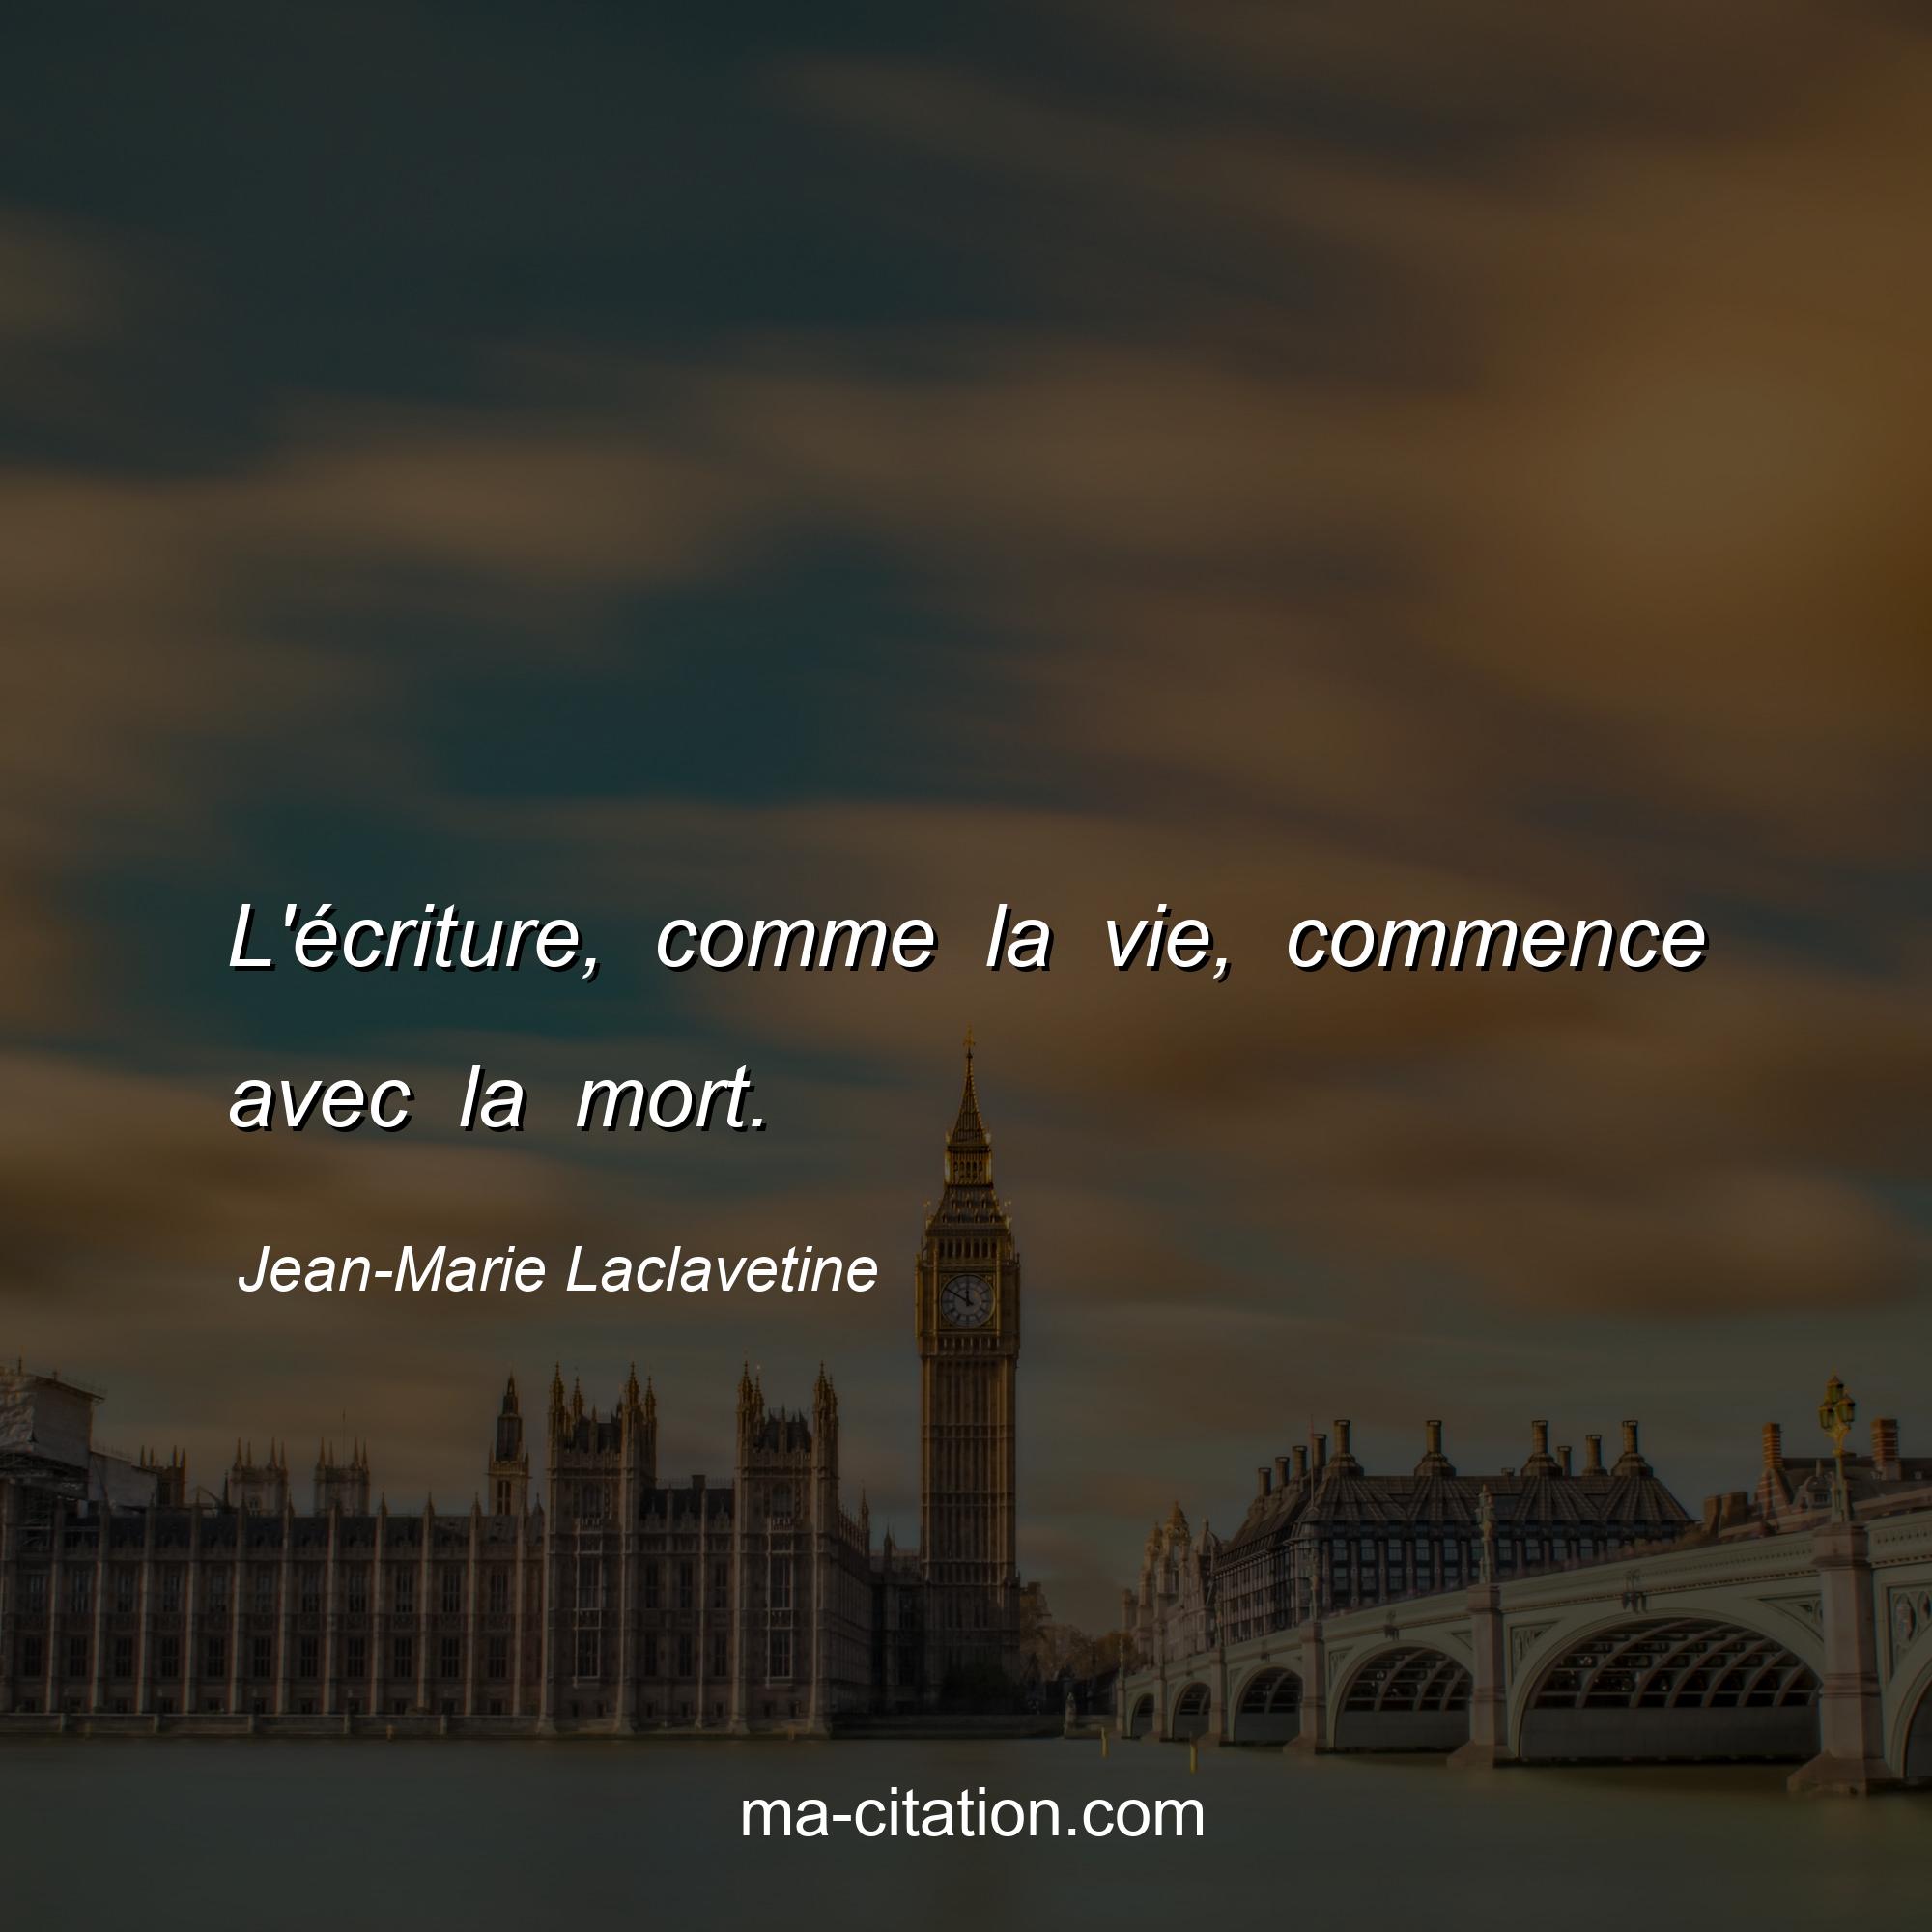 Jean-Marie Laclavetine : L'écriture, comme la vie, commence avec la mort.